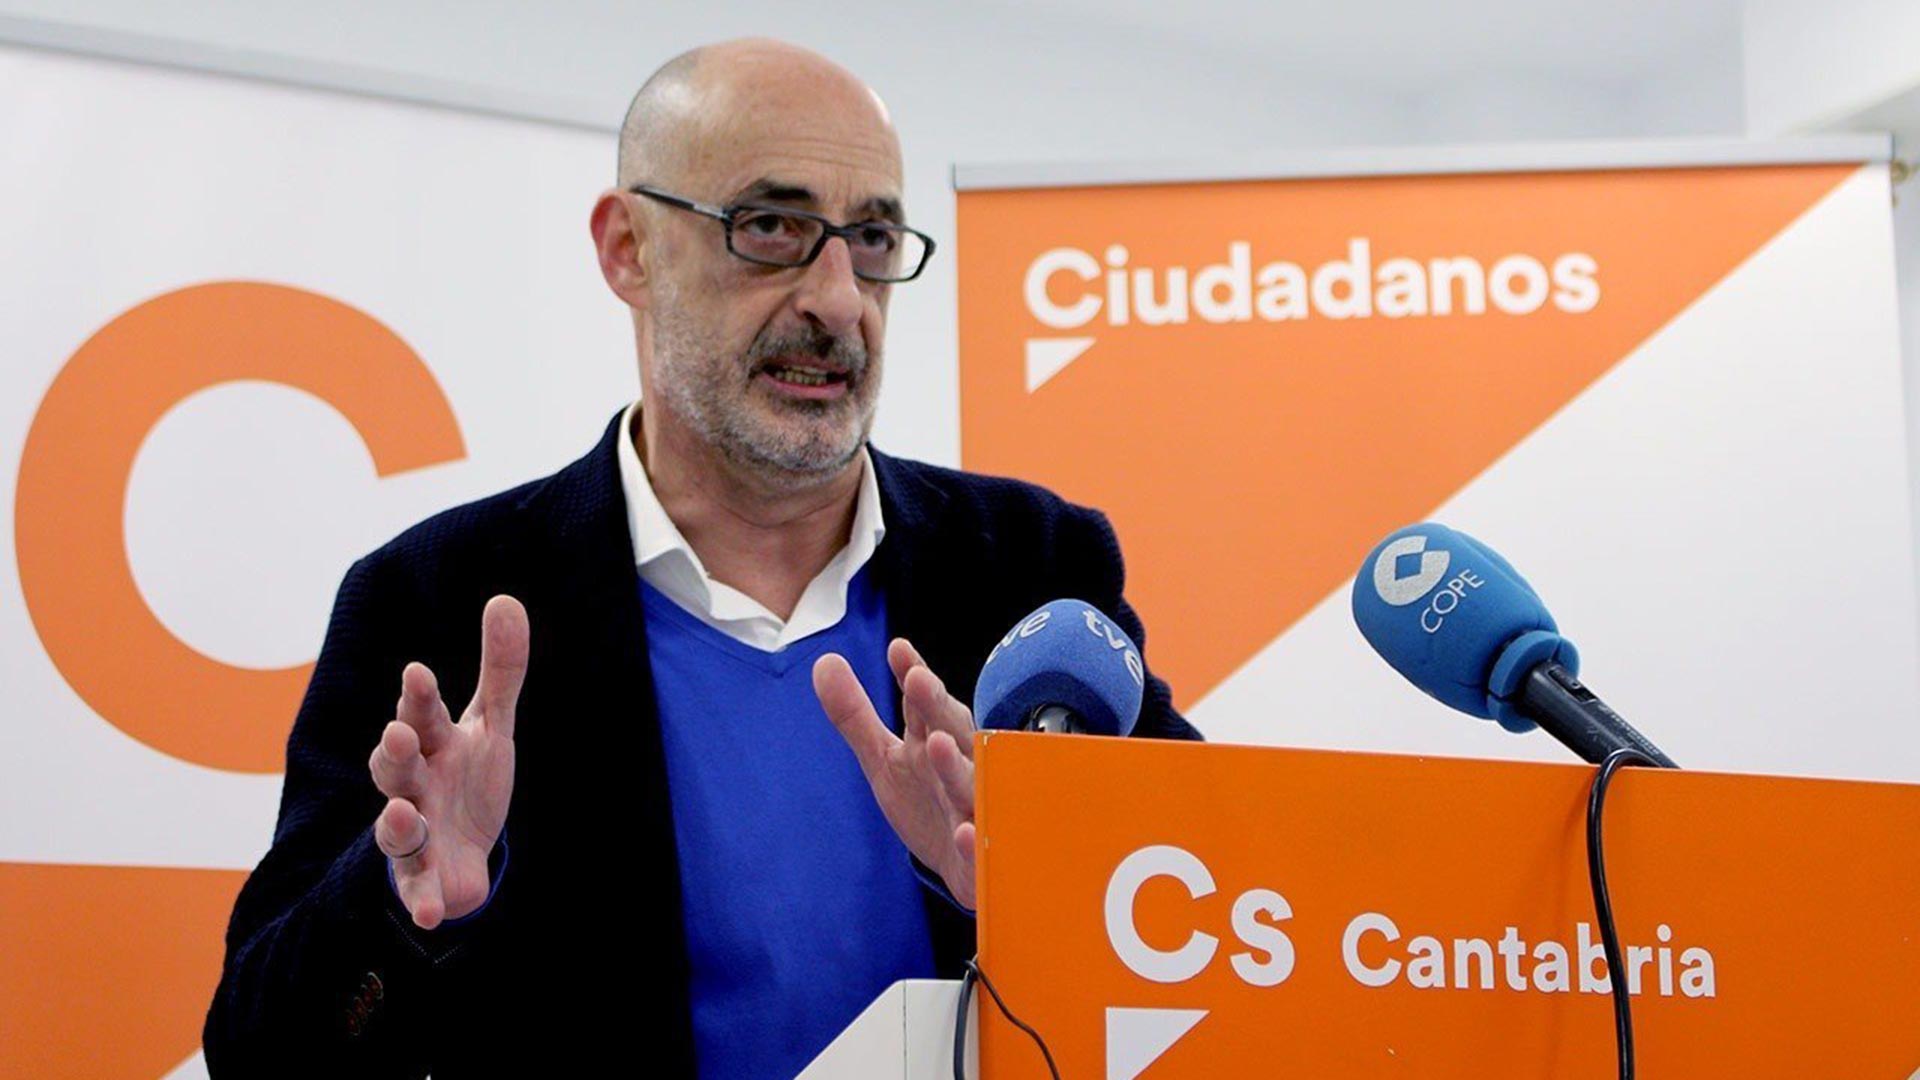 El portavoz de Cs de Cantabria, Félix Álvarez ‘Felisuco’, dimite por desavenencias con la dirección